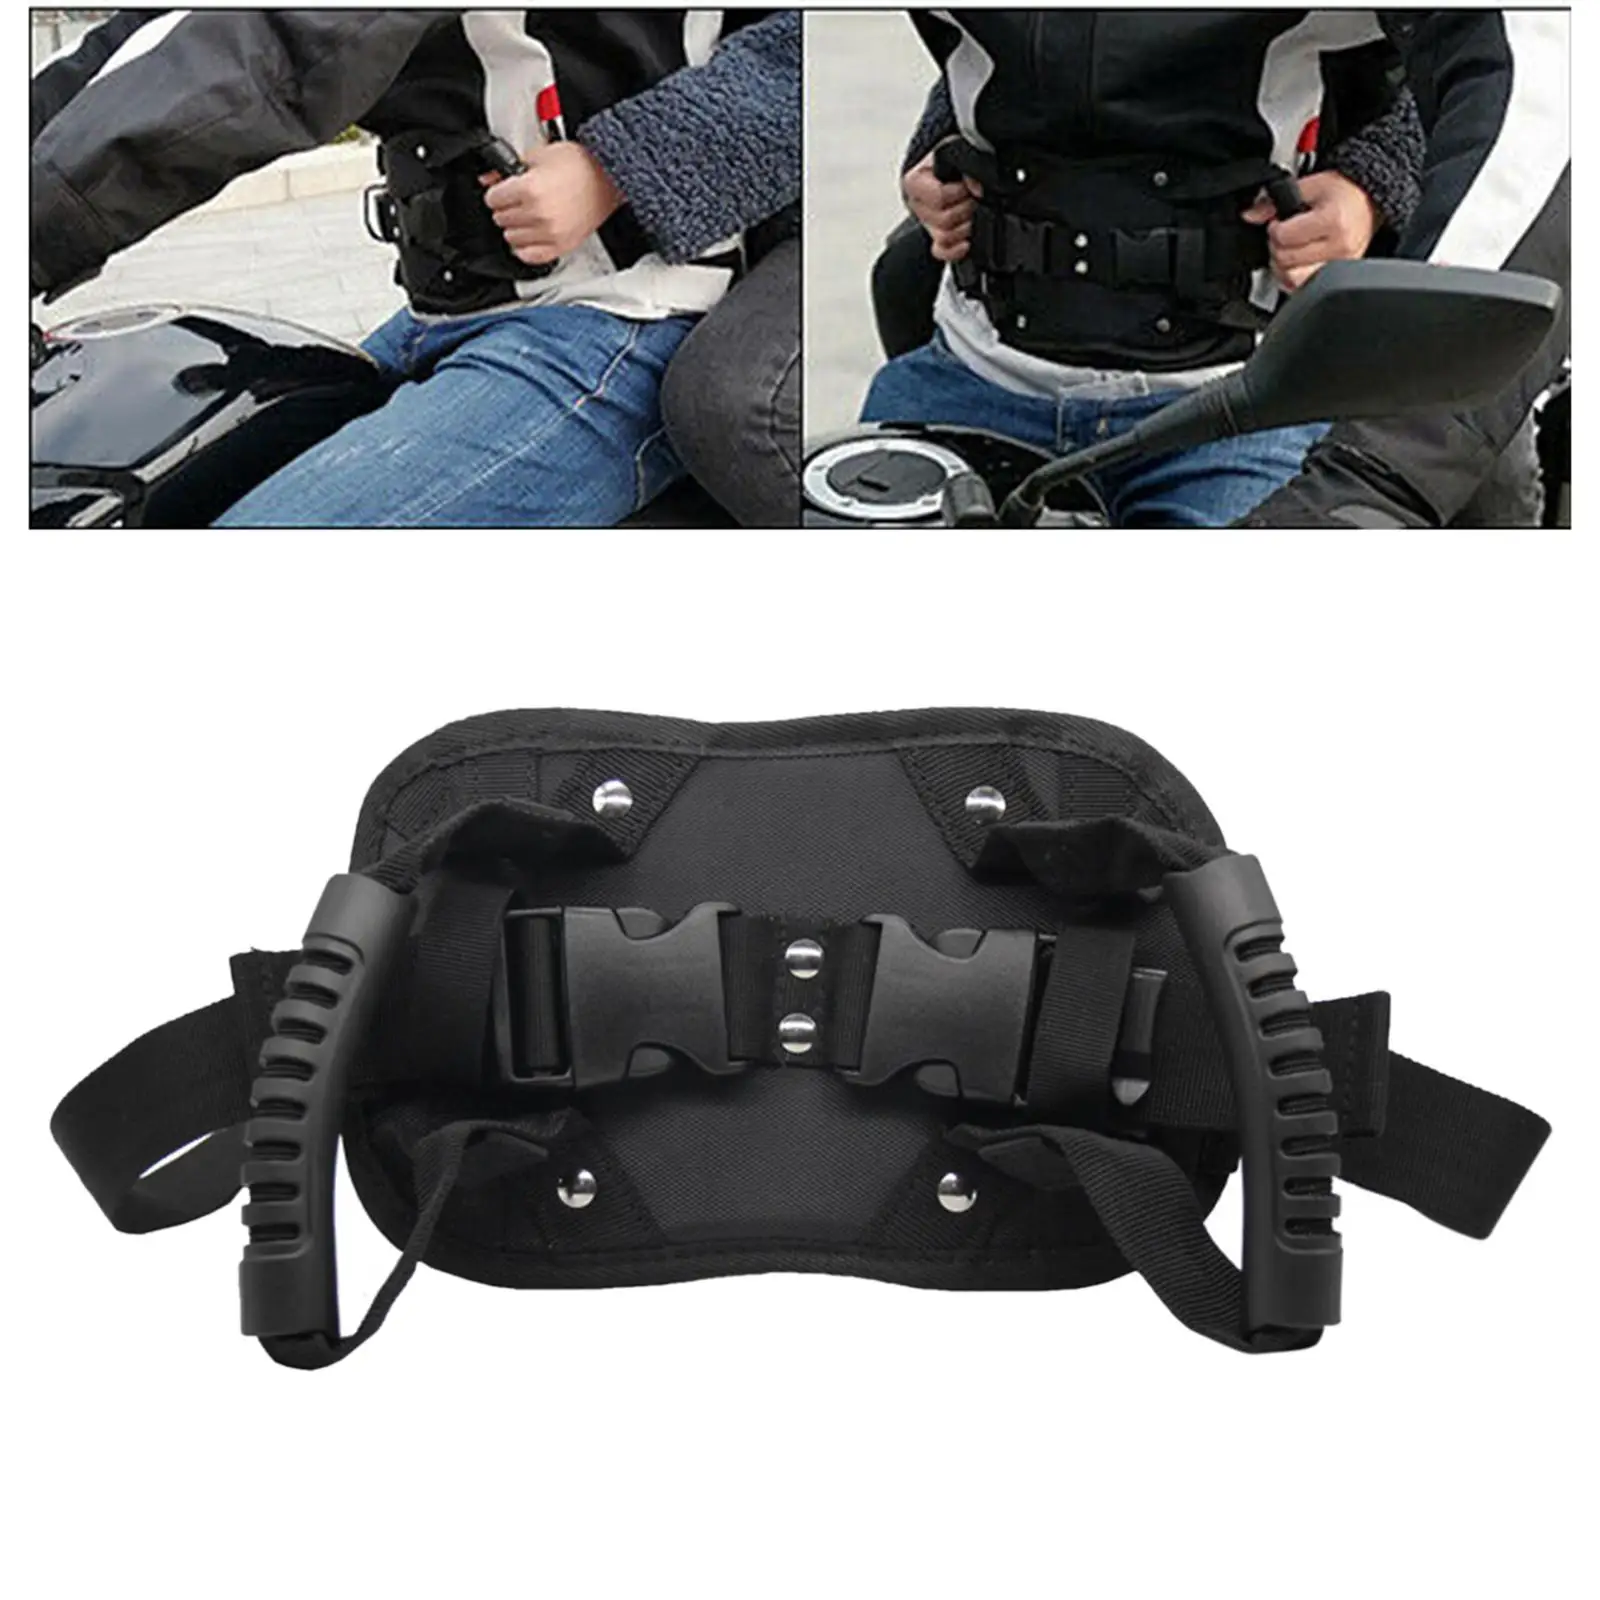 

Motorcycle Scooters Belt, Motorcycle Passenger Belt, Adjustable Strap Grab Handle for Children Elderly Passenger